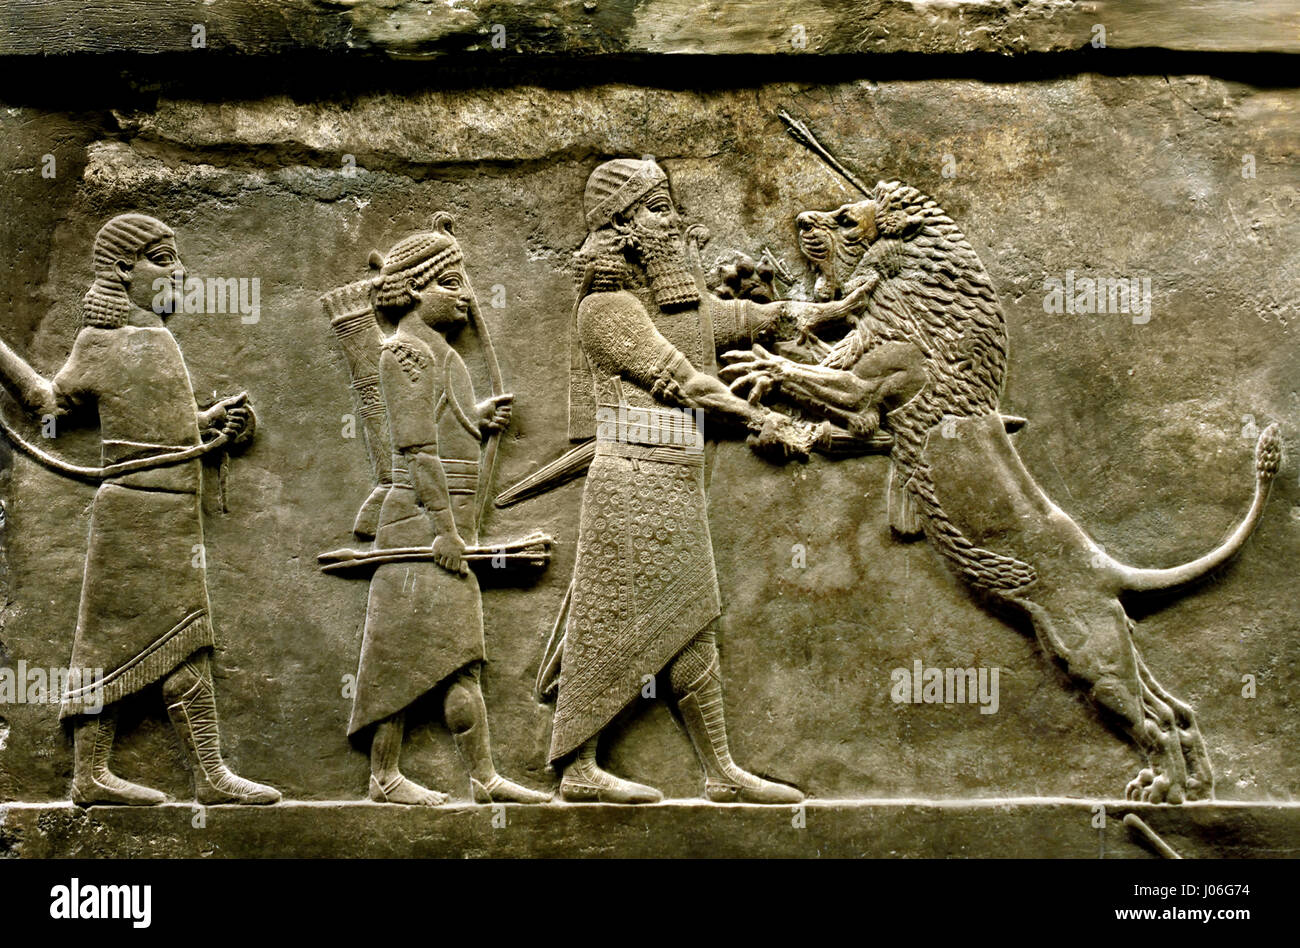 Il leone reale di caccia di re Assurbanipal dal Palazzo Nord di Ninive 645-635 BC Mesopotamia Iraq Assiria ( Re Assurbanipal o Ashshurbanipal, figlio di Esarhaddon e l'ultimo forte re dell'Impero Neo-Assyrian (934-609 BC ) dettaglio Foto Stock